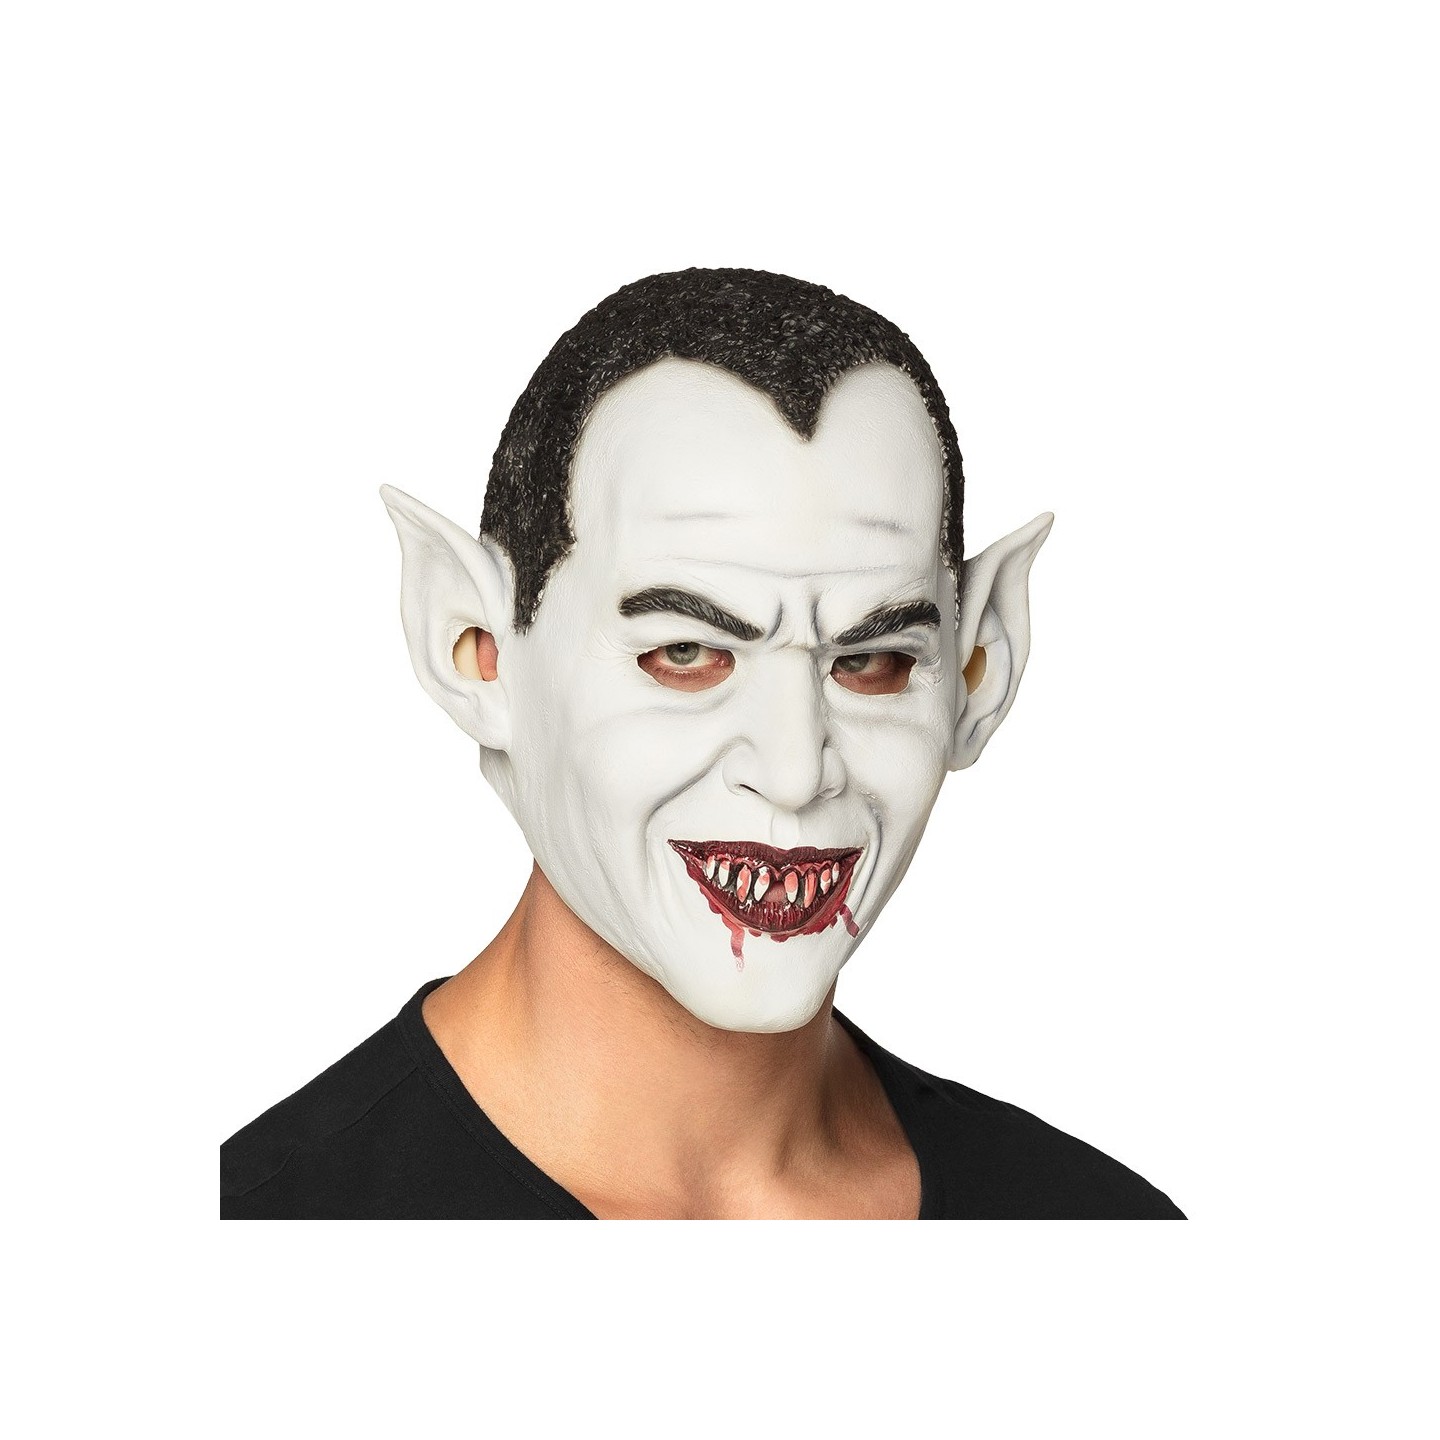 enge Halloween masker vampier dracula masker